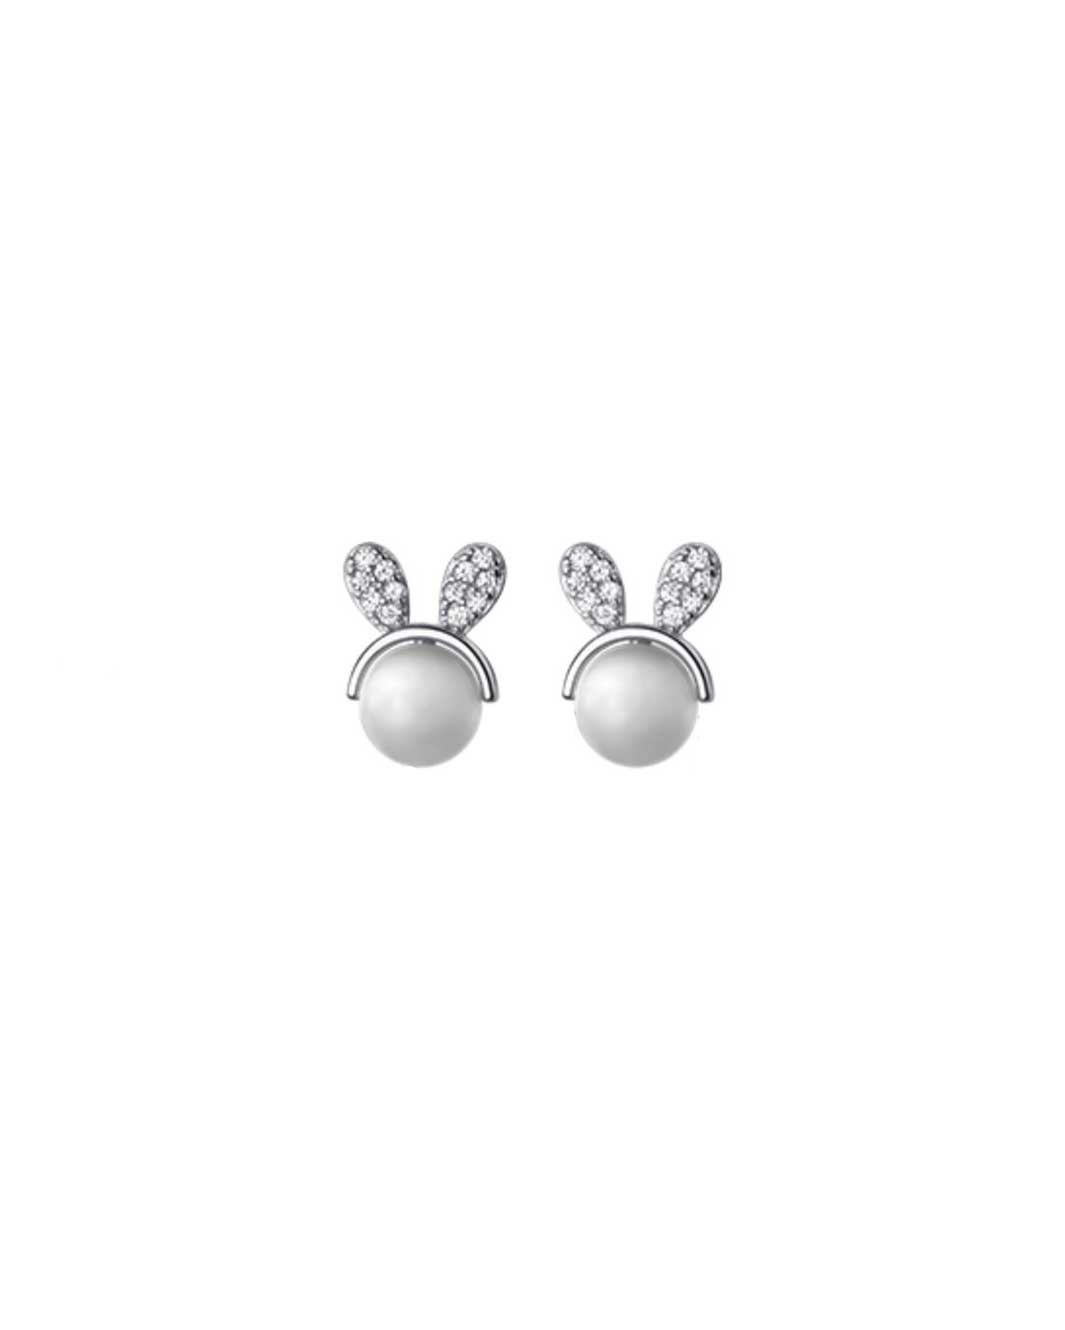 Opal Bunny Stud Earrings